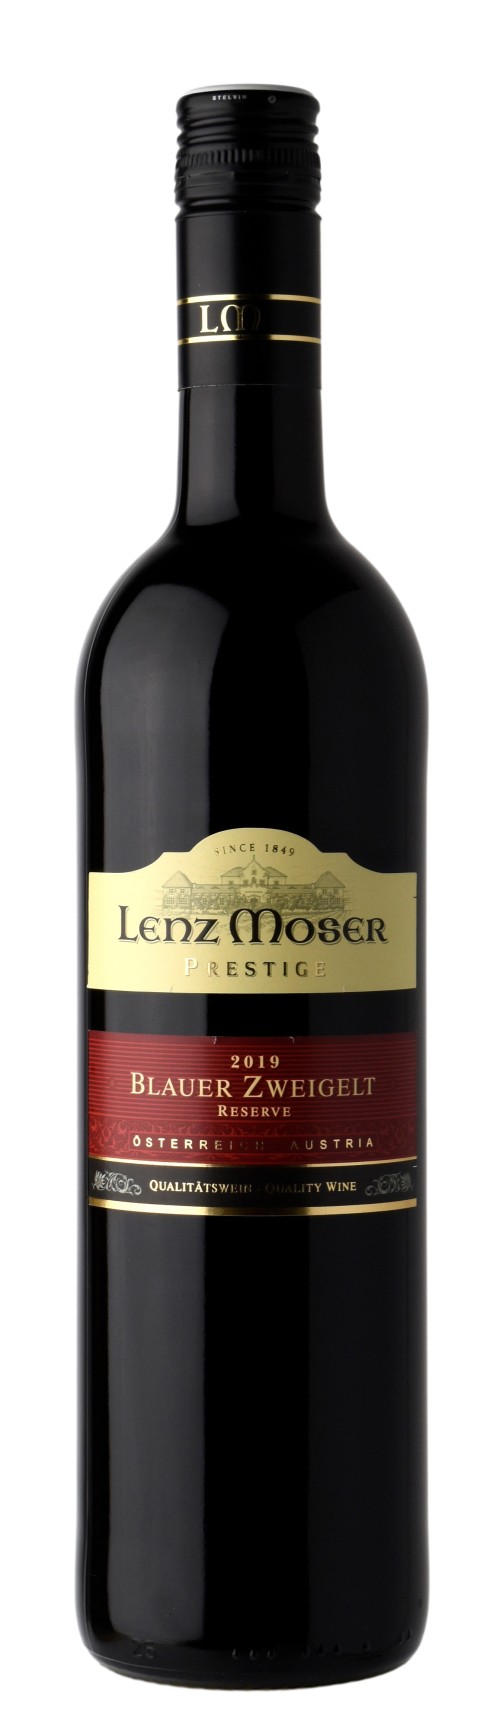 Prestige Reserve Wein Guide Zweigelt | Blauer